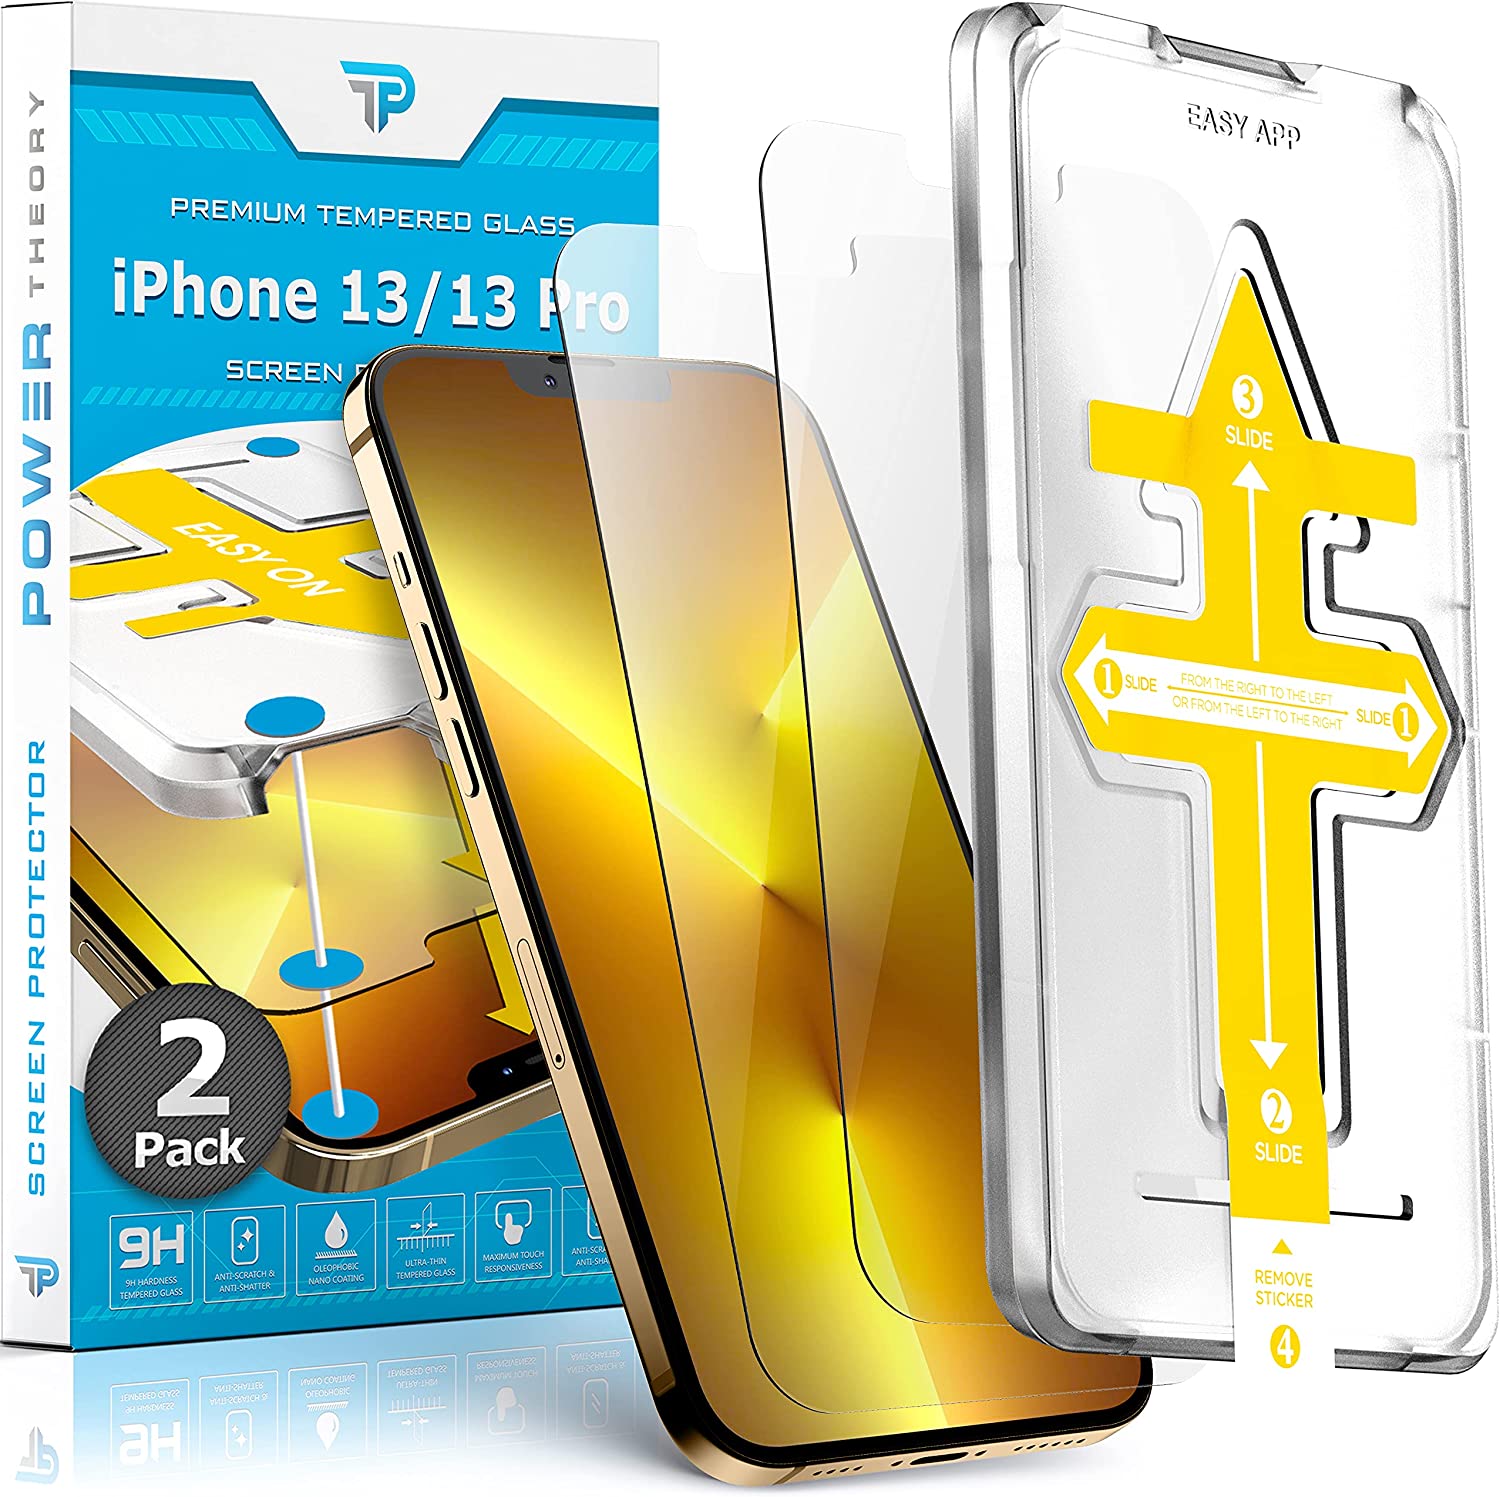 Power Theory Schutzfolie kompatibel mit iPhone 13 Pro/iPhone 13 [2 Stück] -  mit Anbringhilfe, Glas Folie, Displayschutzfolie, Schutzglas mit Schablone